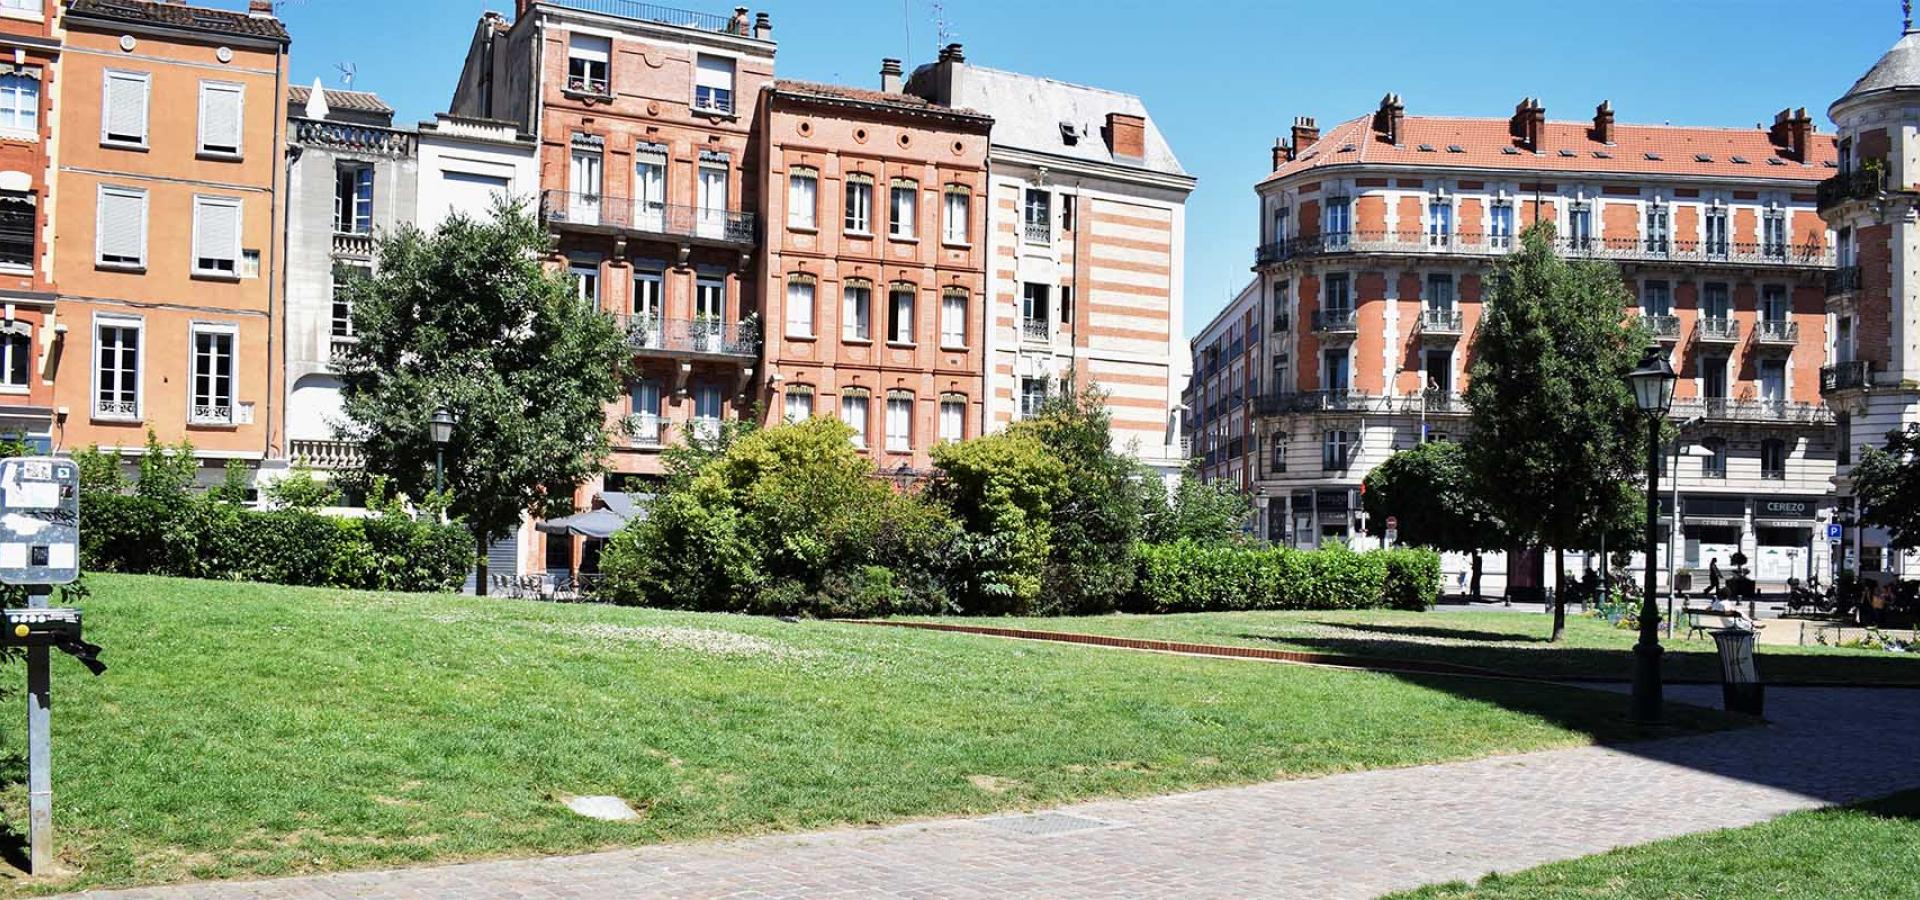 Décor tournage : square à Toulouse, façade d'immeubles anciens